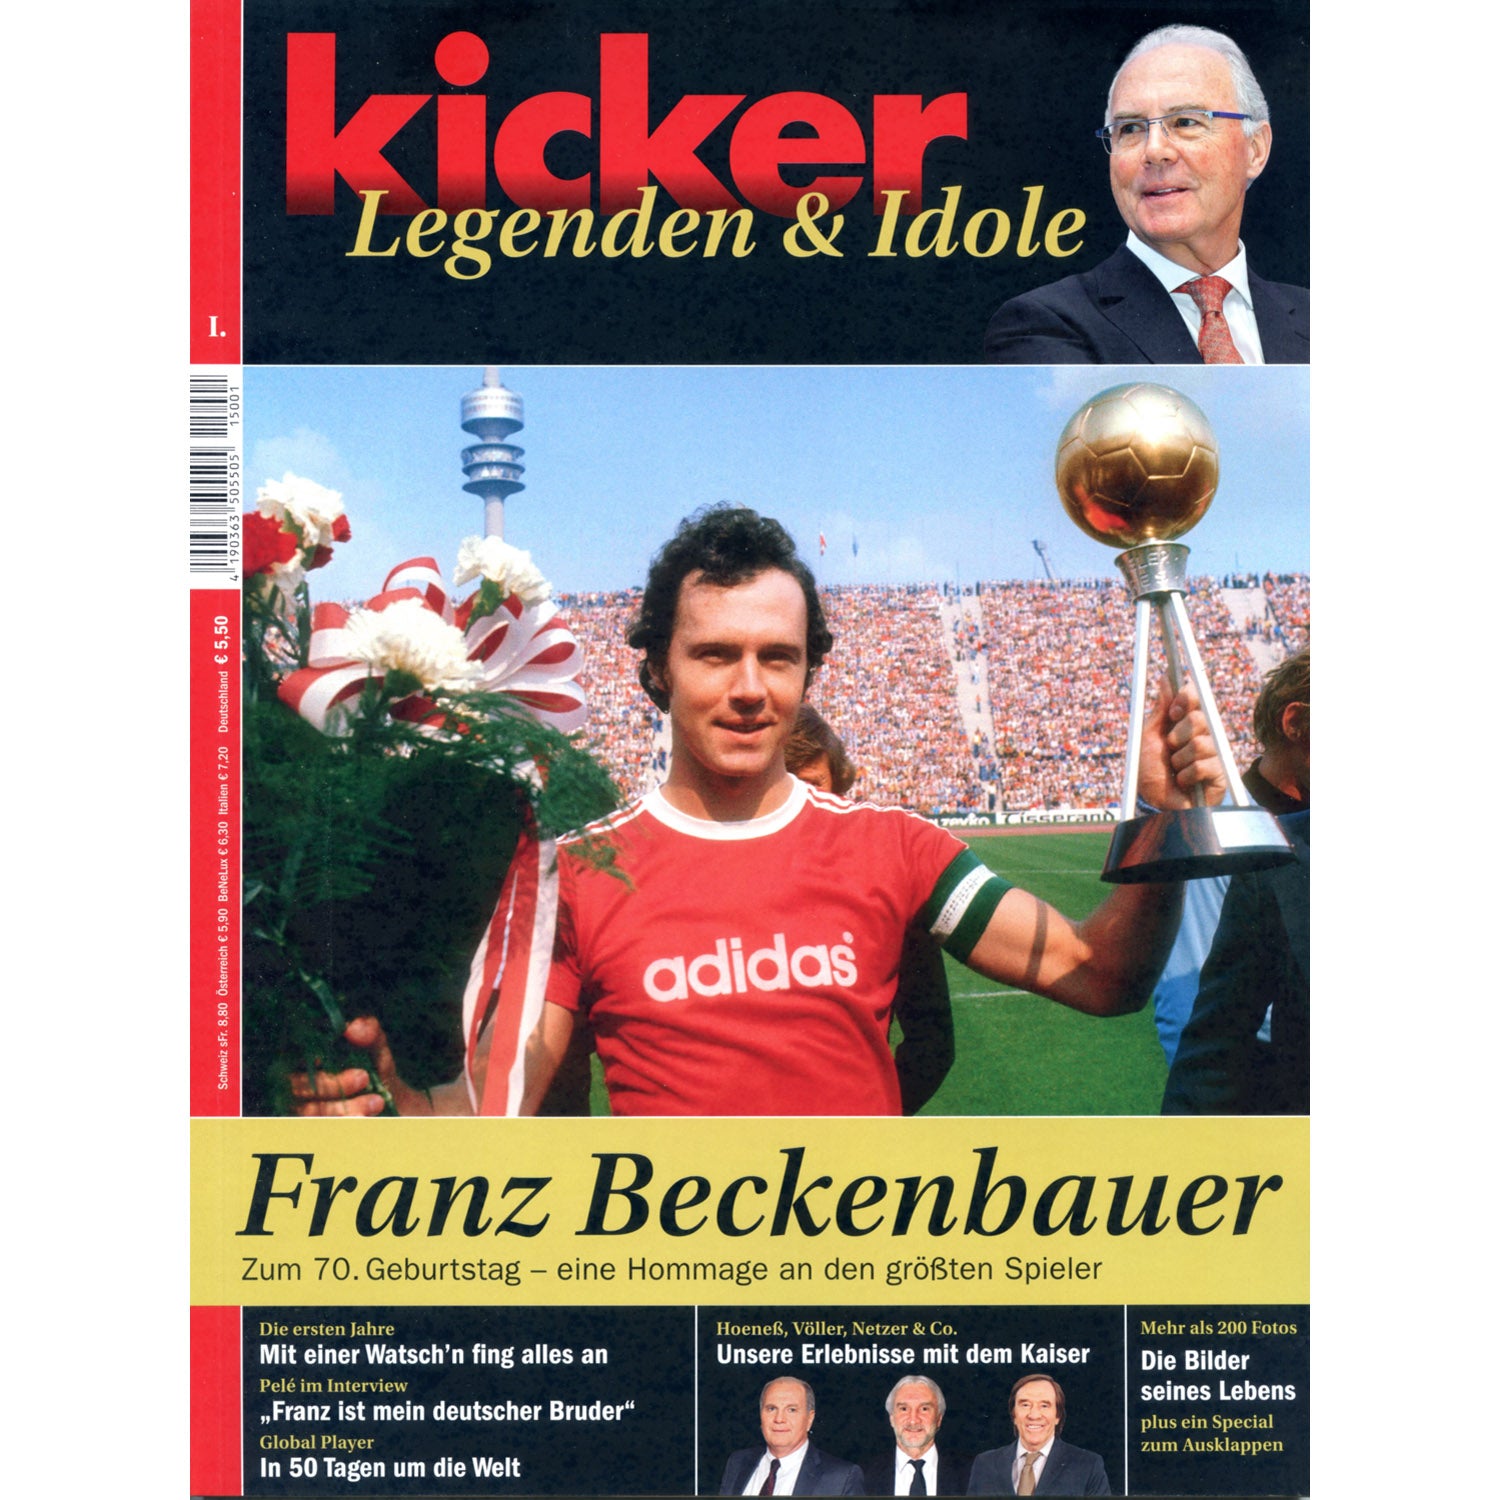 Kicker Legenden & Idole – Franz Beckenbauer (Tribute magazine)